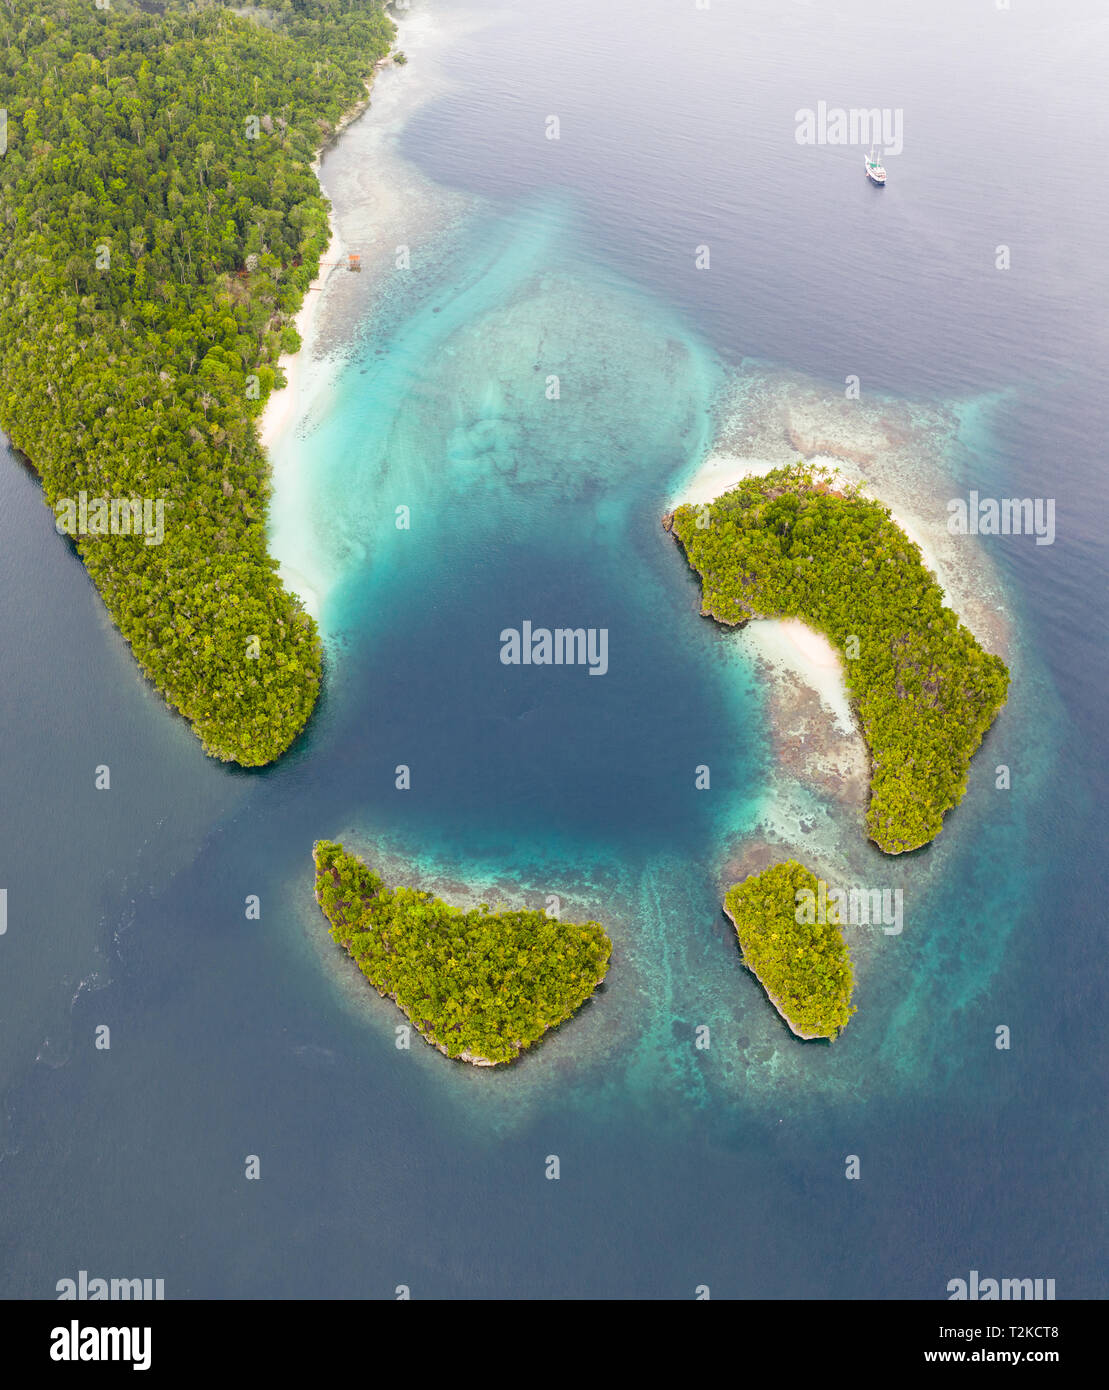 Îles de calcaire, entourée de récifs coralliens, se trouvent éparpillées dans les Raja Ampat seascape. Cette région est connue pour sa biodiversité marine. Banque D'Images